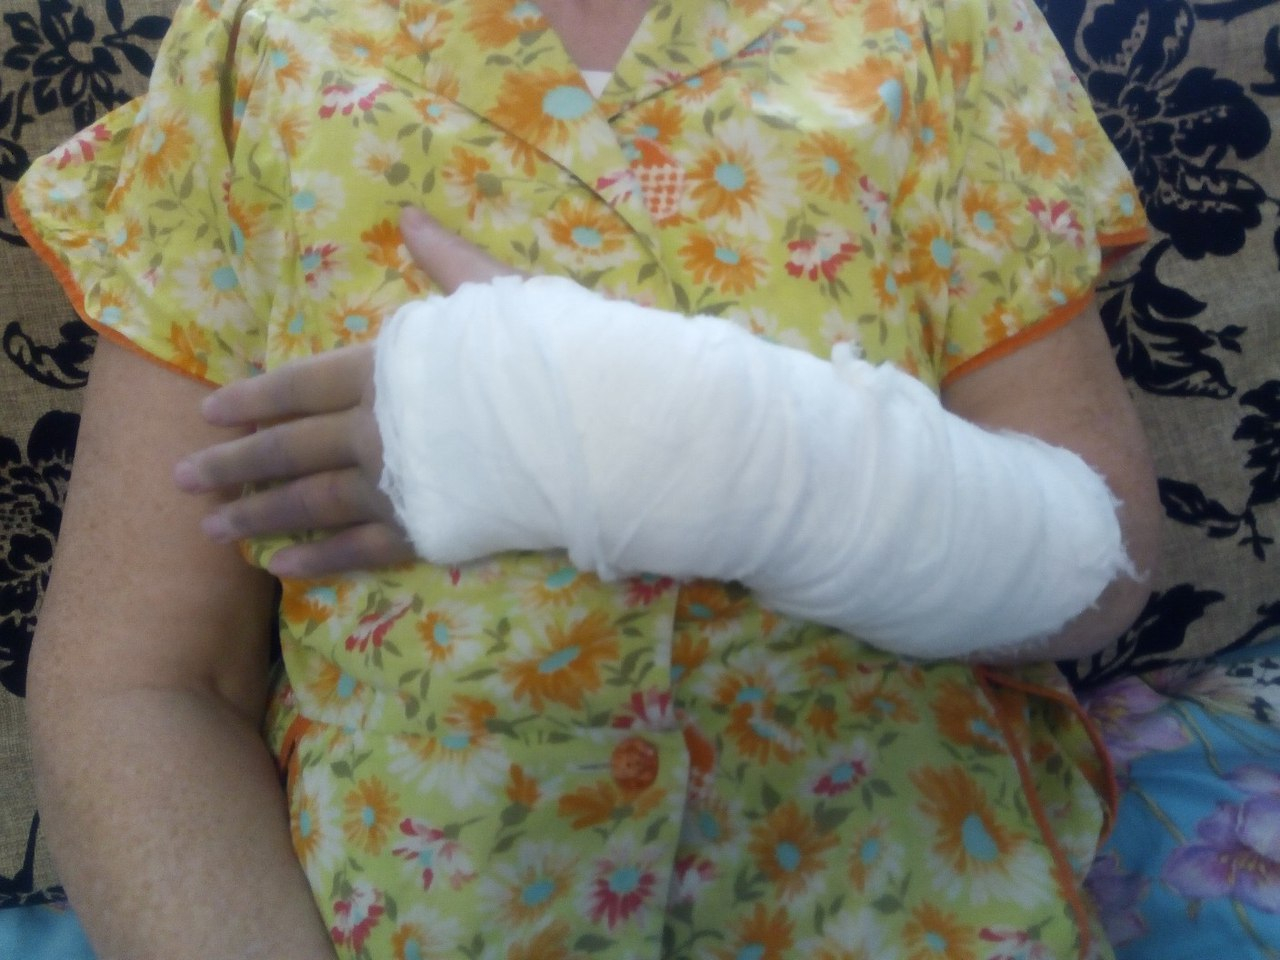 Ярославна пошла за покупкам и сломала руку